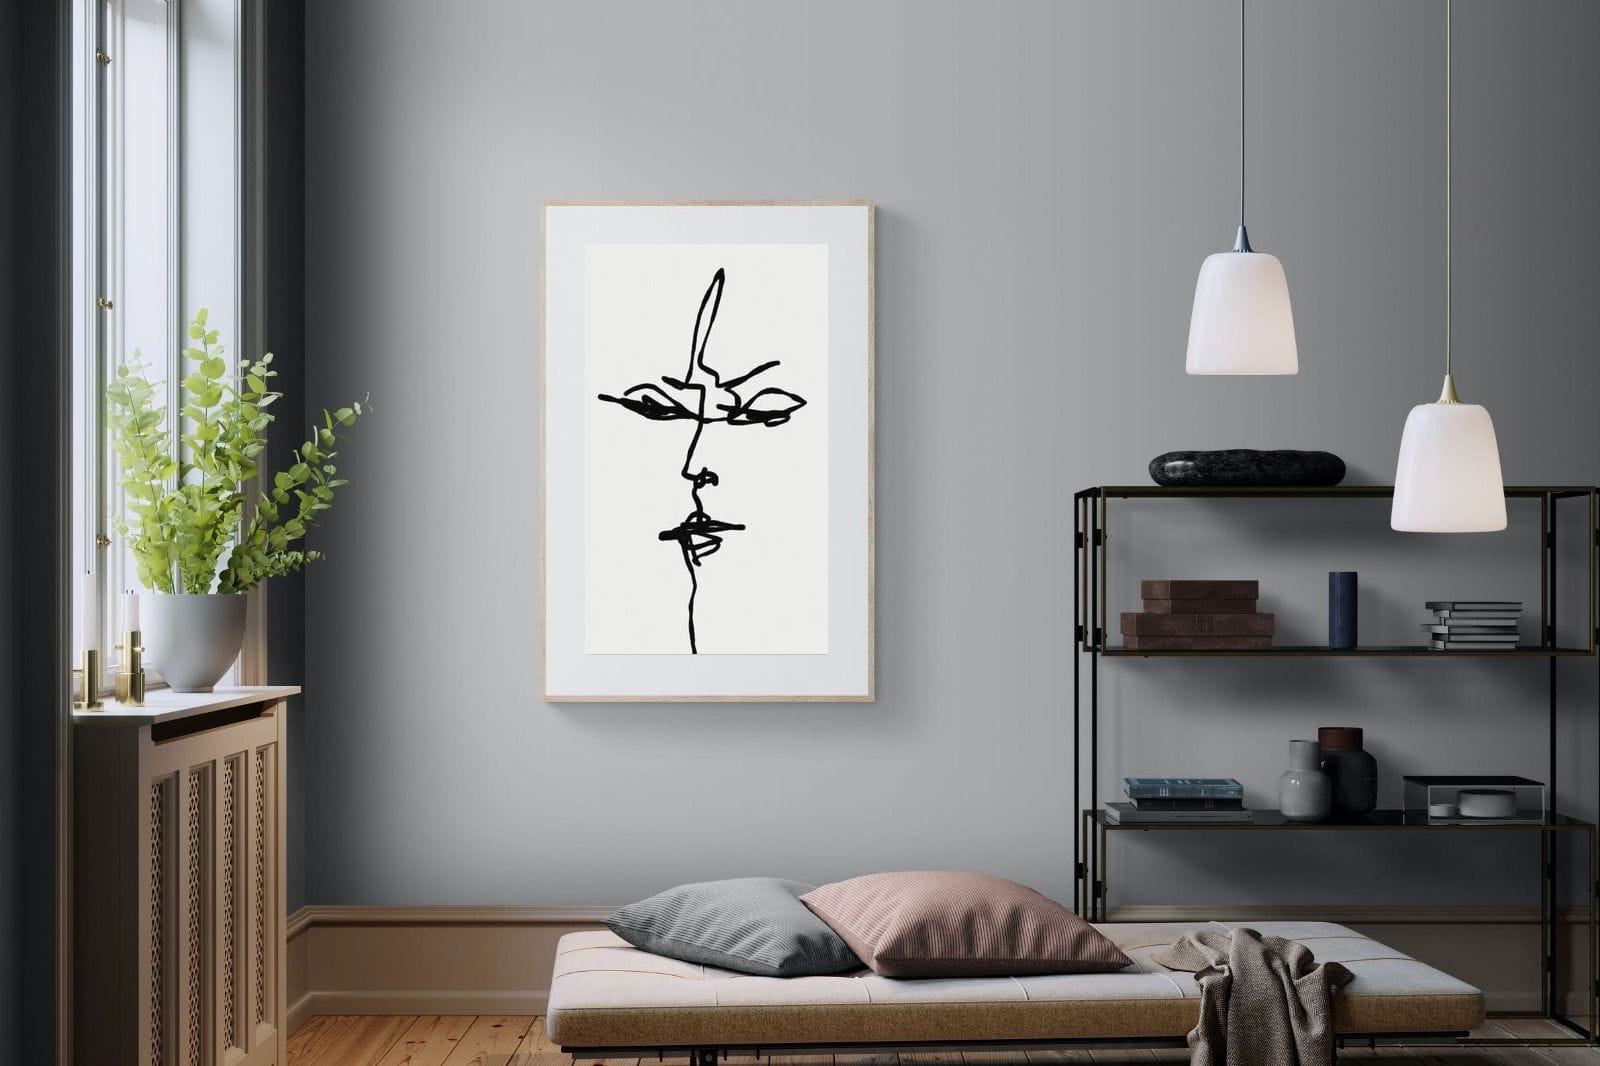 Him-Wall_Art-100 x 150cm-Framed Print-Wood-Pixalot